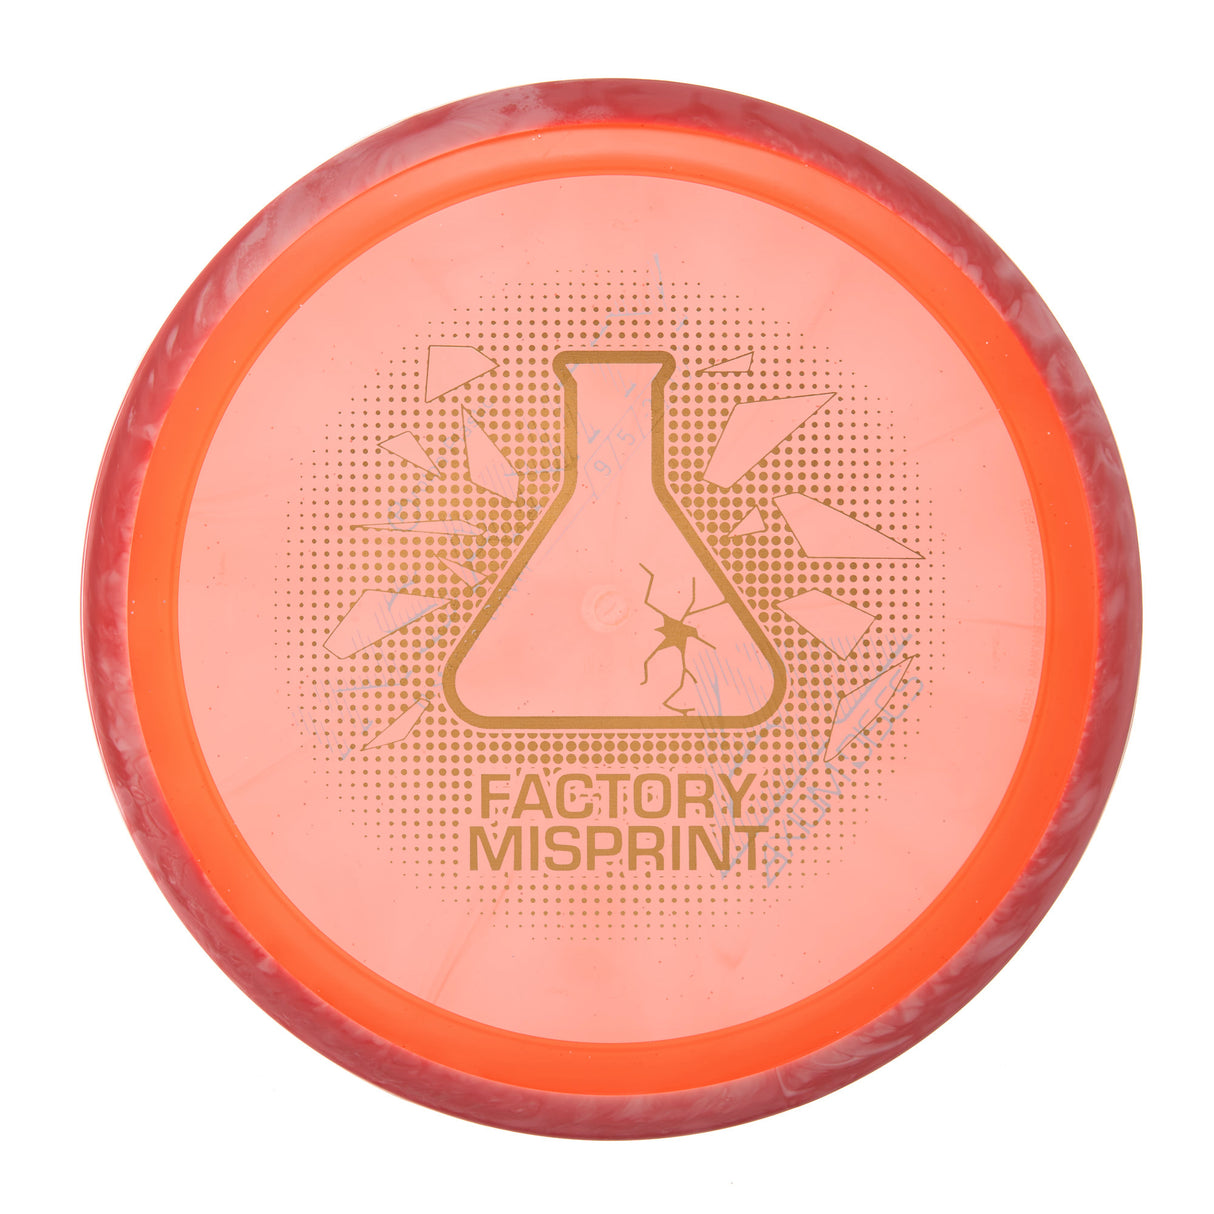 Axiom Insanity - Factory Misprint Proton 166g | Style 0004